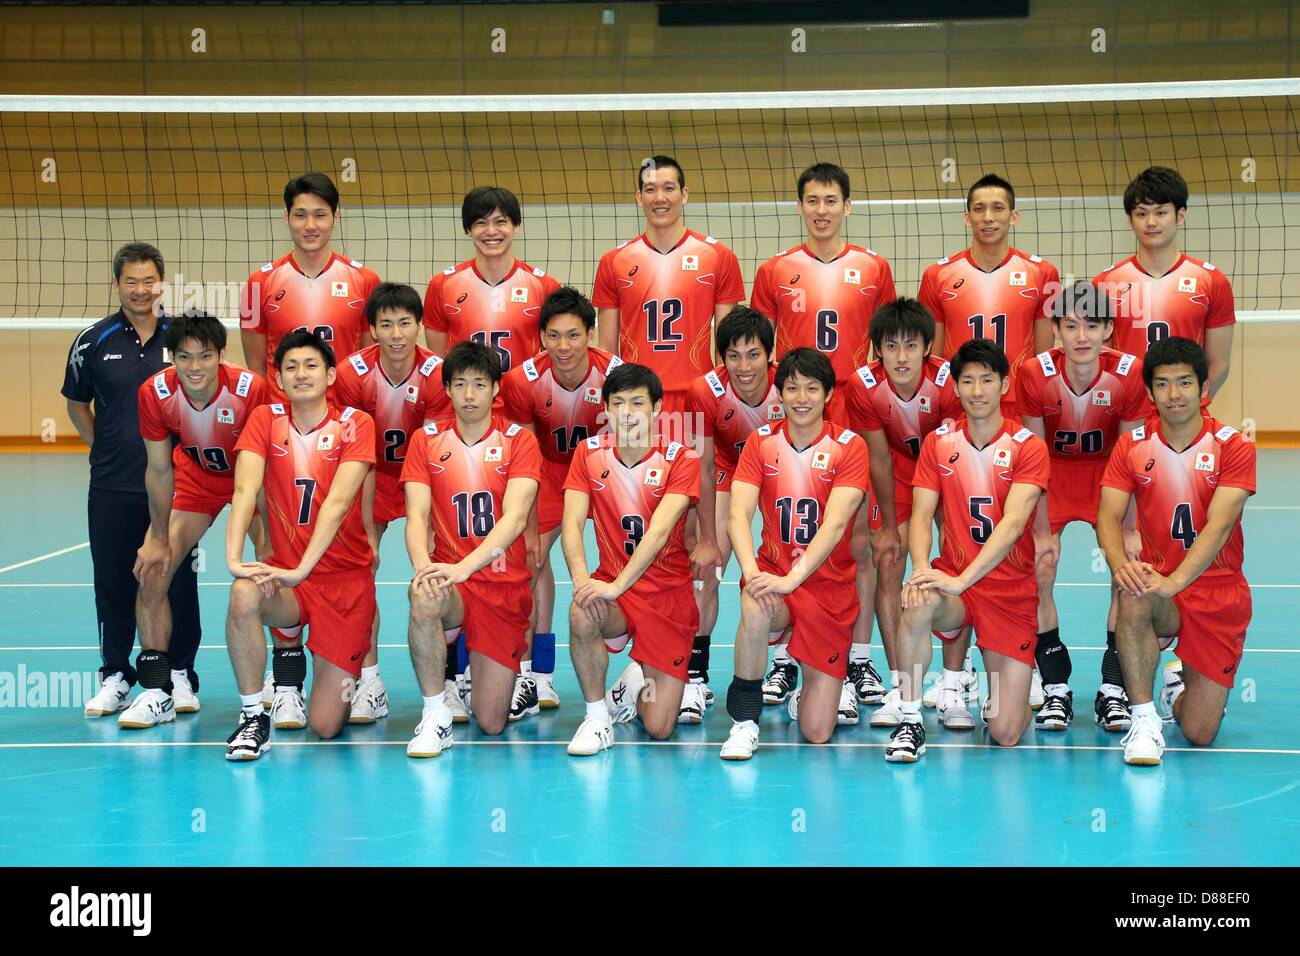 Япония волейбол мужчины. Мужская сборная Японии по волейболу волейболисты Японии. Волейбольная команда Японии мужская Нишида. Либеро сборной Японии по волейболу. Волейбольная команда Японии мужская сборная.